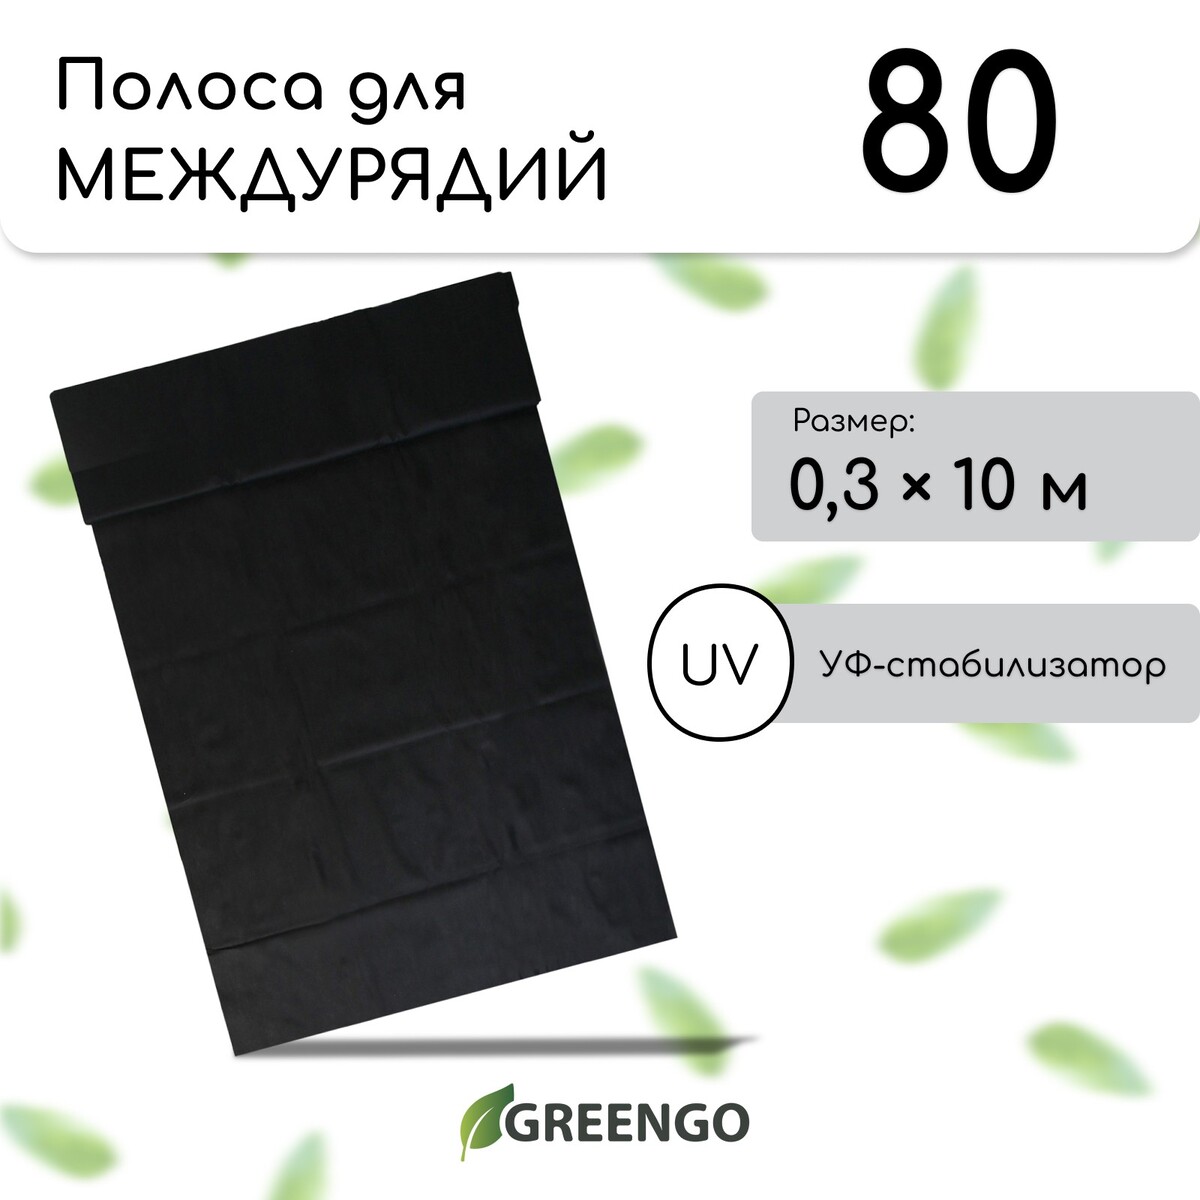 Полоса защитная для междурядий, мульчирующая, 10 × 0,3 м, плотность 80 г/м², спанбонд с уф-стабилизатором, черный, greengo, эконом 30%